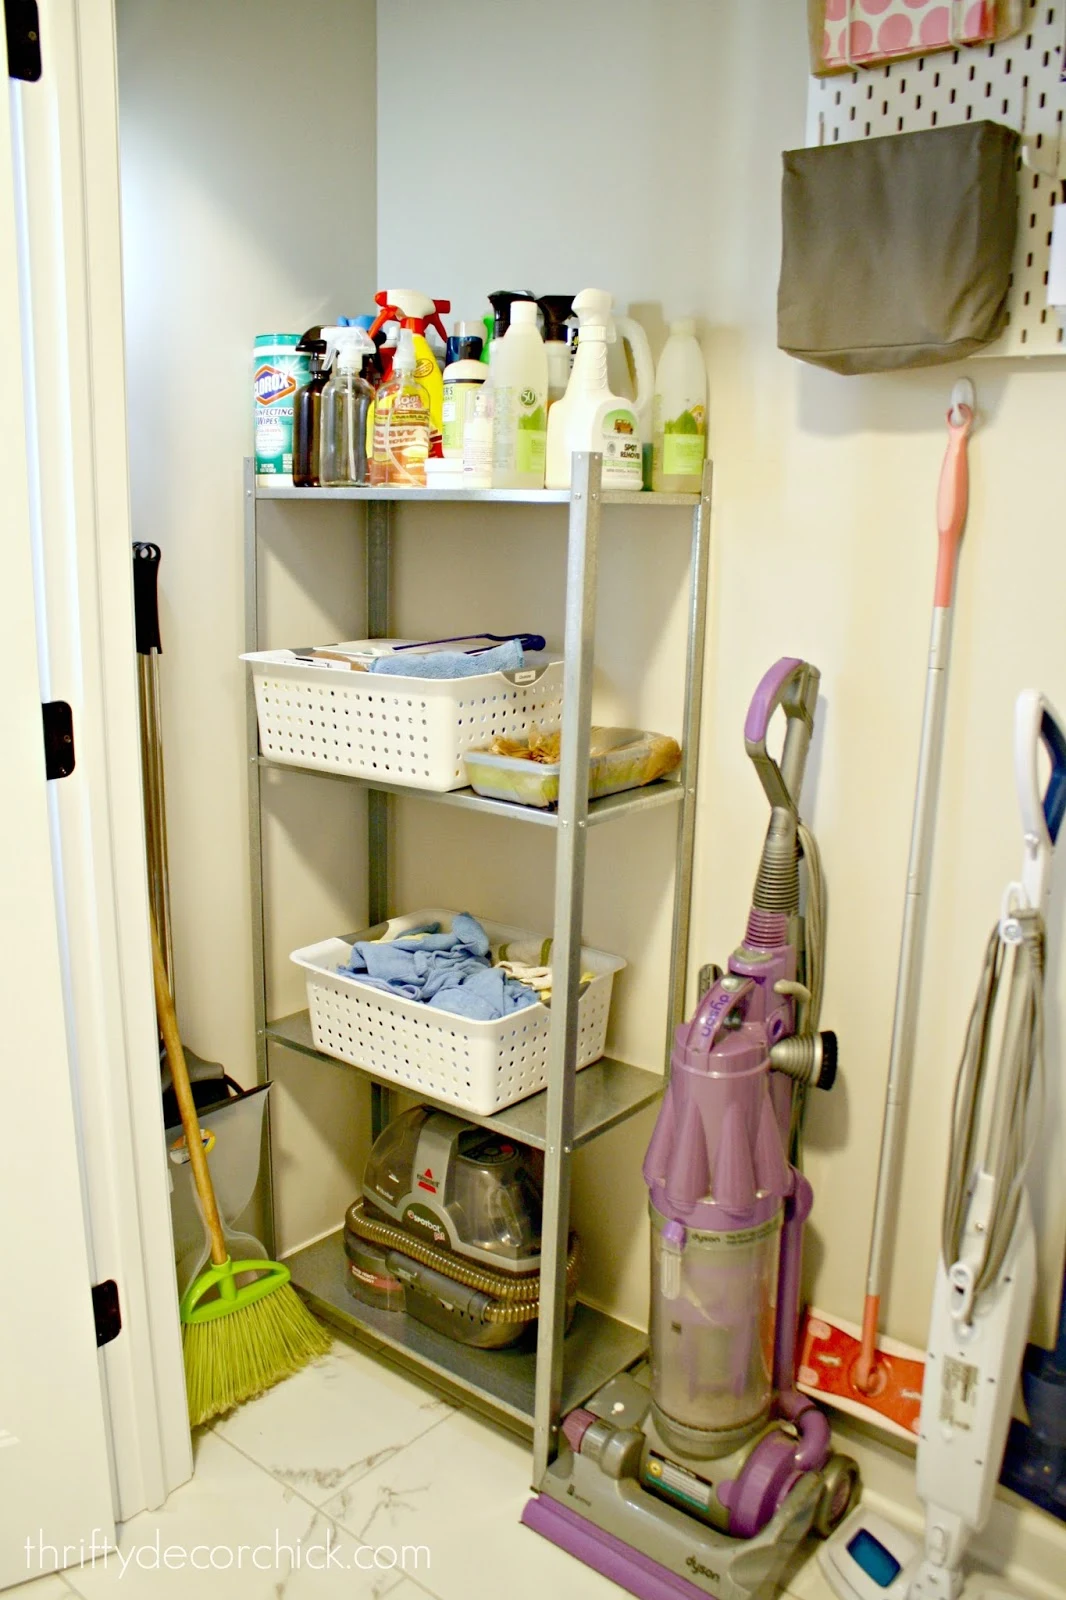 Cleaning supplies closet in garage : r/OrganizationPorn